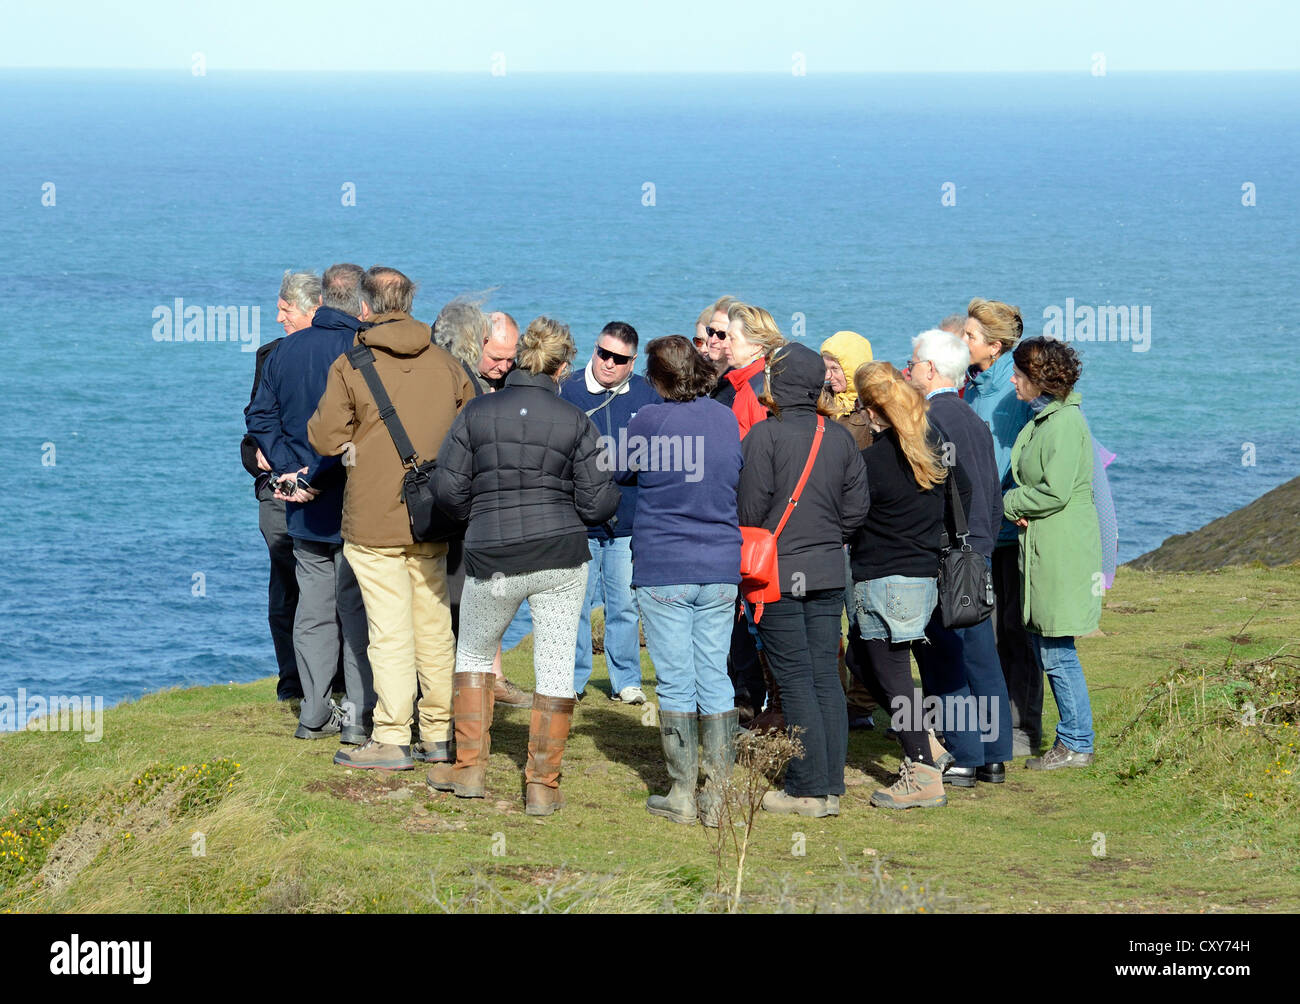 Eine Gruppe von Touristen auf den Meeresklippen während einer Führung durch die Grafschaften Cornwall, UK, Zinn-Bergbau-Gebiet Stockfoto